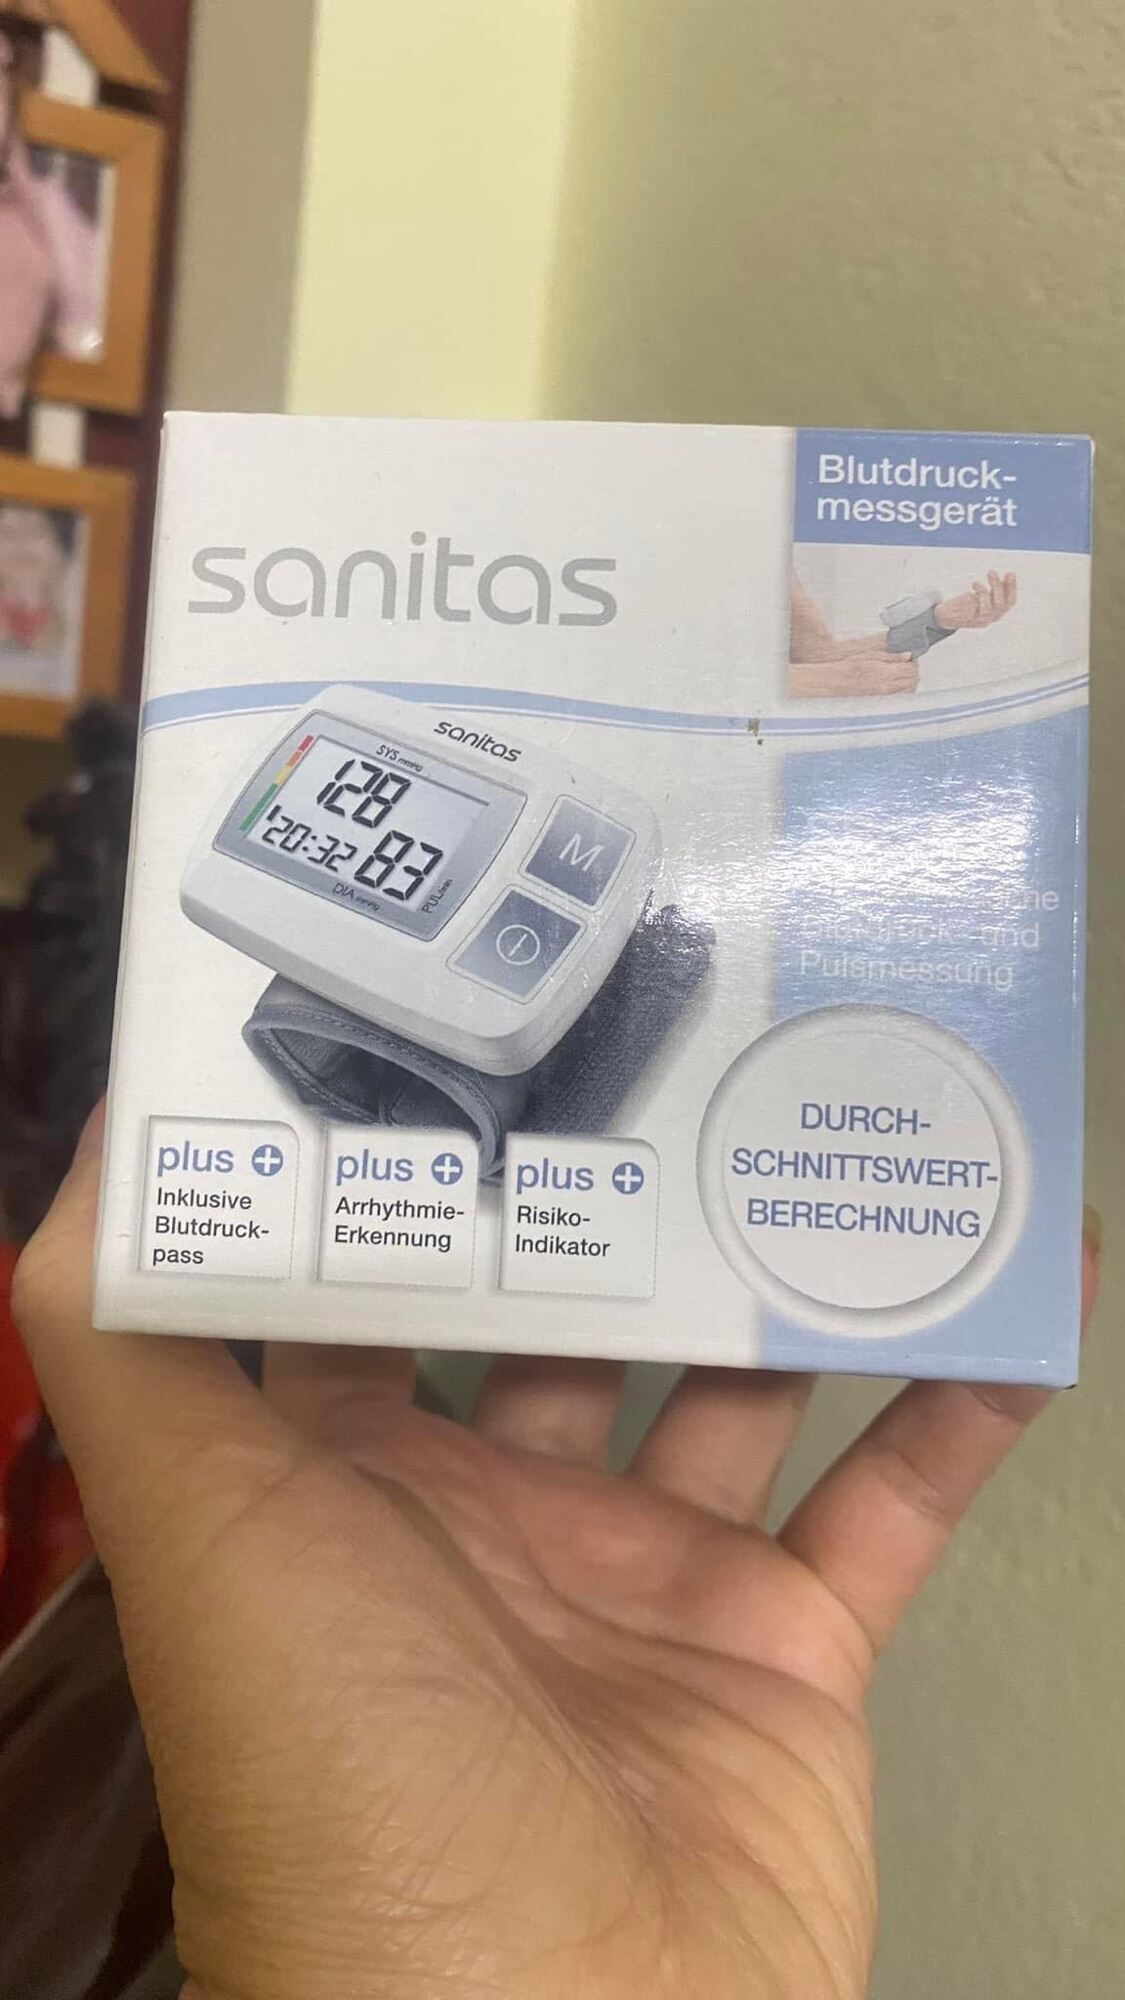 áy đo huyết áp cổ tay Sanitas SBC 23 - Đức